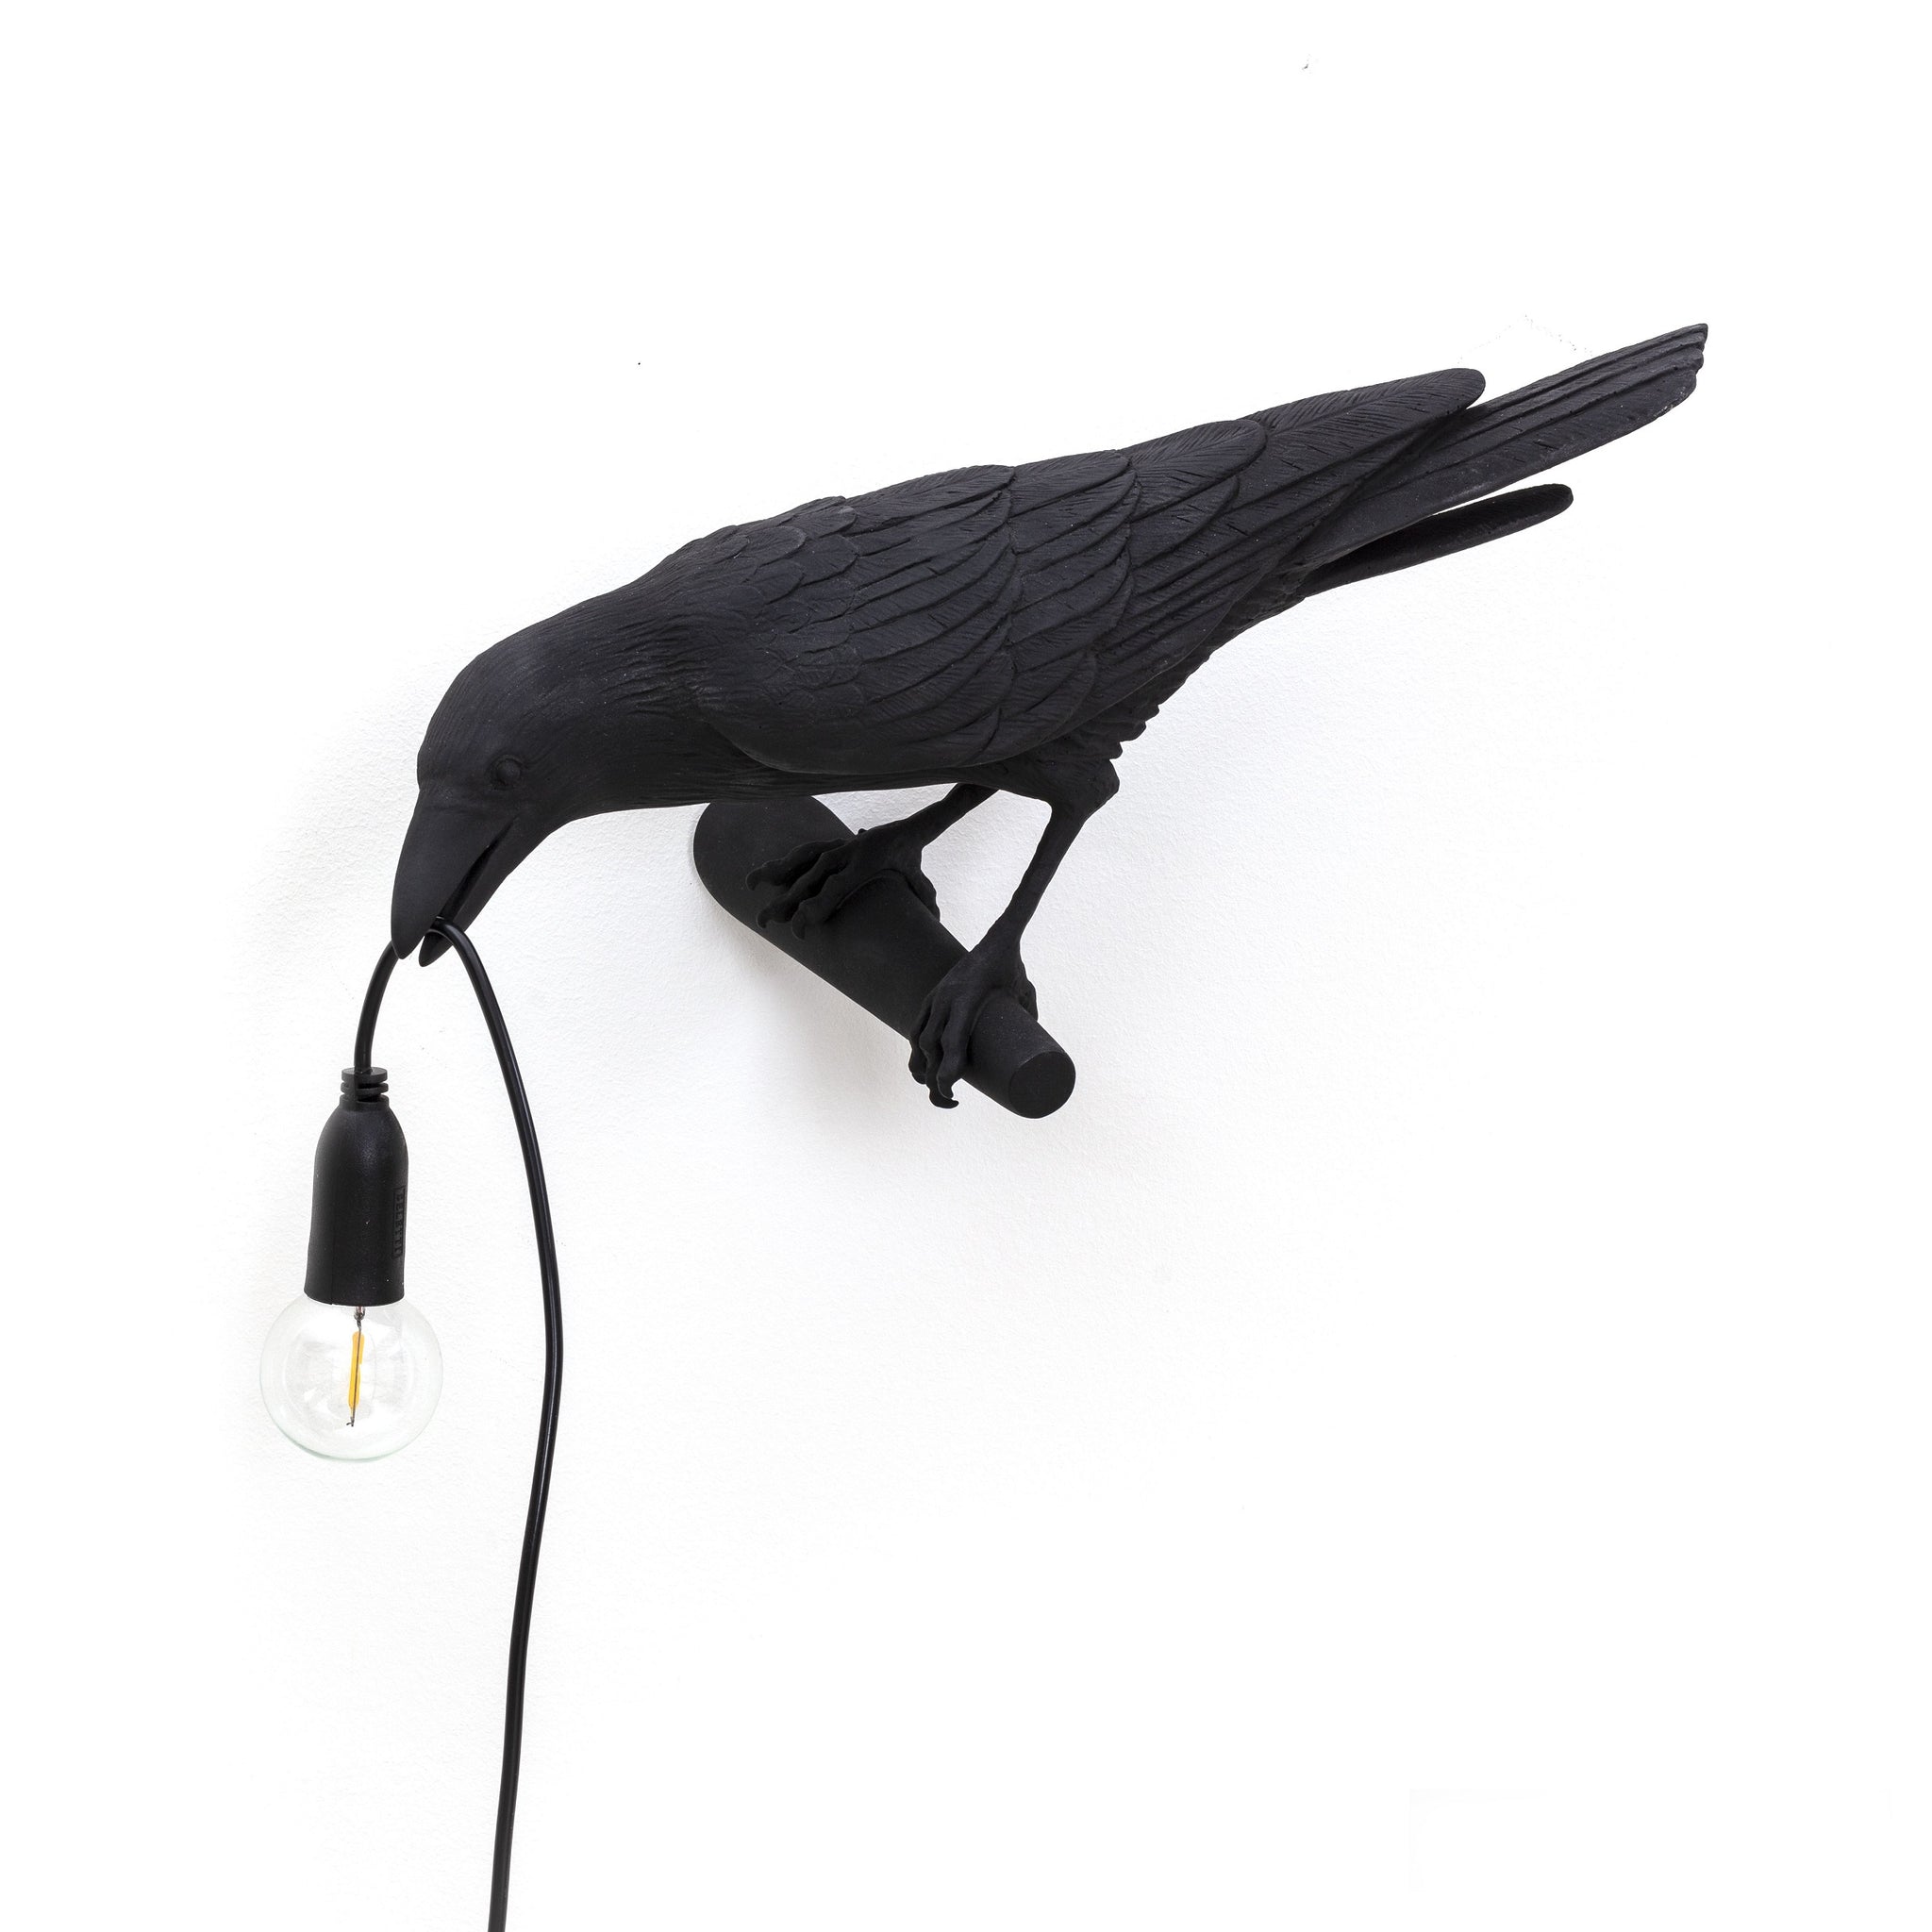 De Bird Lamp is een ontwerp van Marcantonio voor het Italiaanse merk Seletti. In sprookjes en films staat de kraai vaak symbool voor onheil. Maar deze vogels zijn je gevederde vriend en wijzen de weg in het donker. Verschillende versies, zowel indoor als outdoor. 